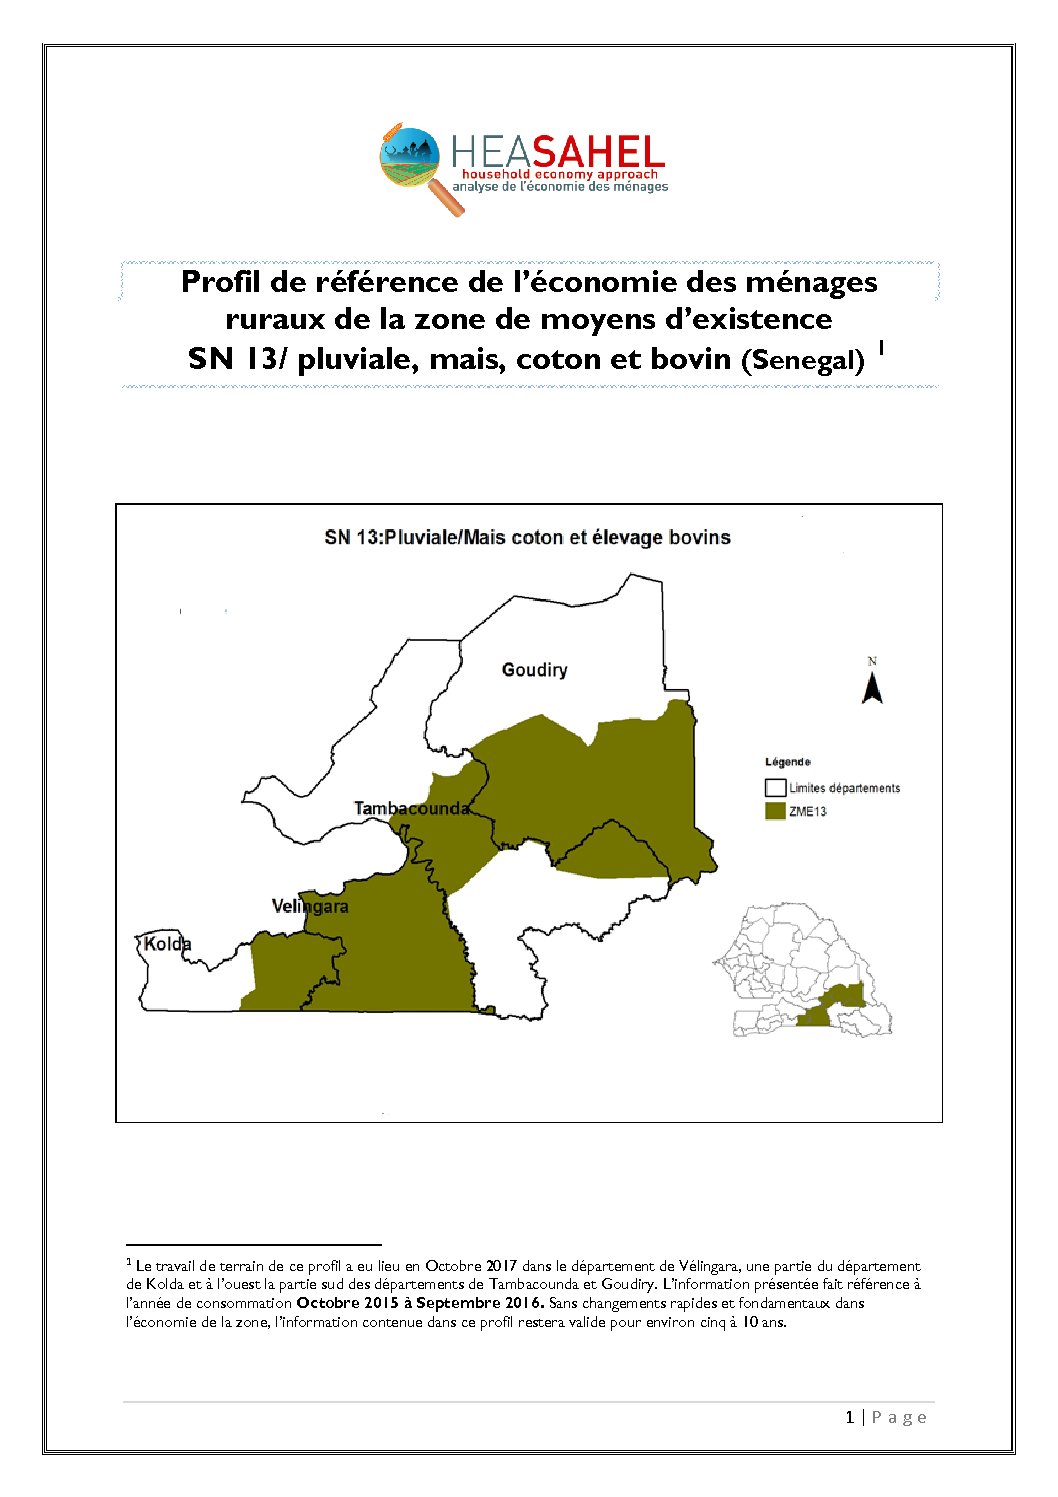 Profil Senegal - SN13 - Vélingara, Kolda, Tambacounda et Goudiry  - Octobre 2017